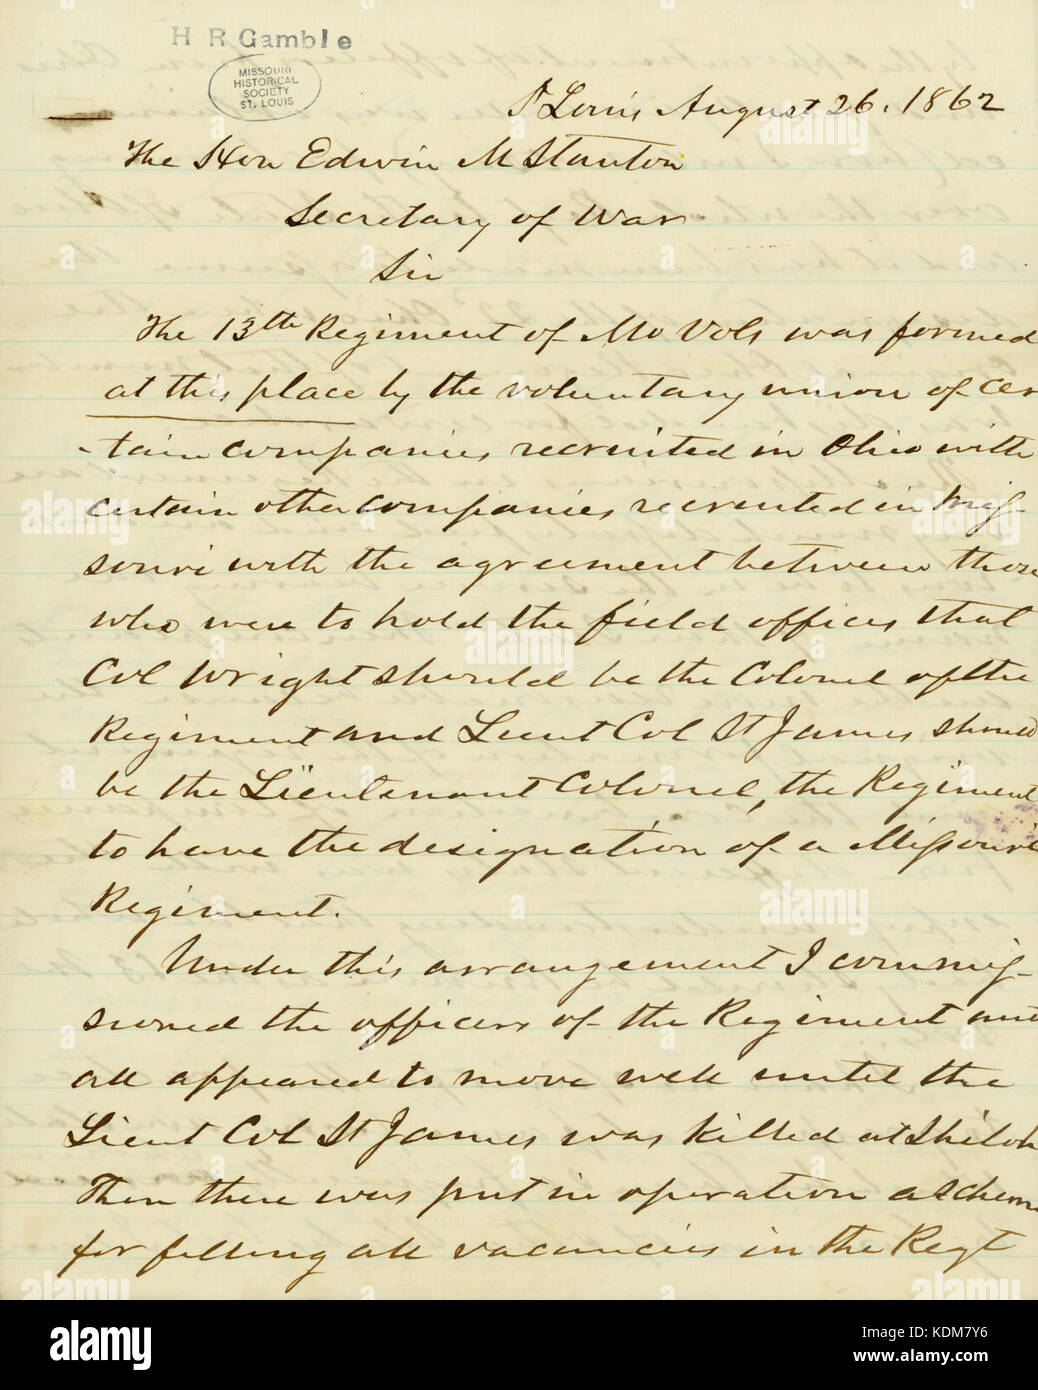 Lettre signée H.R. Gamble, Saint Louis, à l'honorable Edwin M. Stanton, secrétaire de la guerre, le 26 août 1862 Banque D'Images